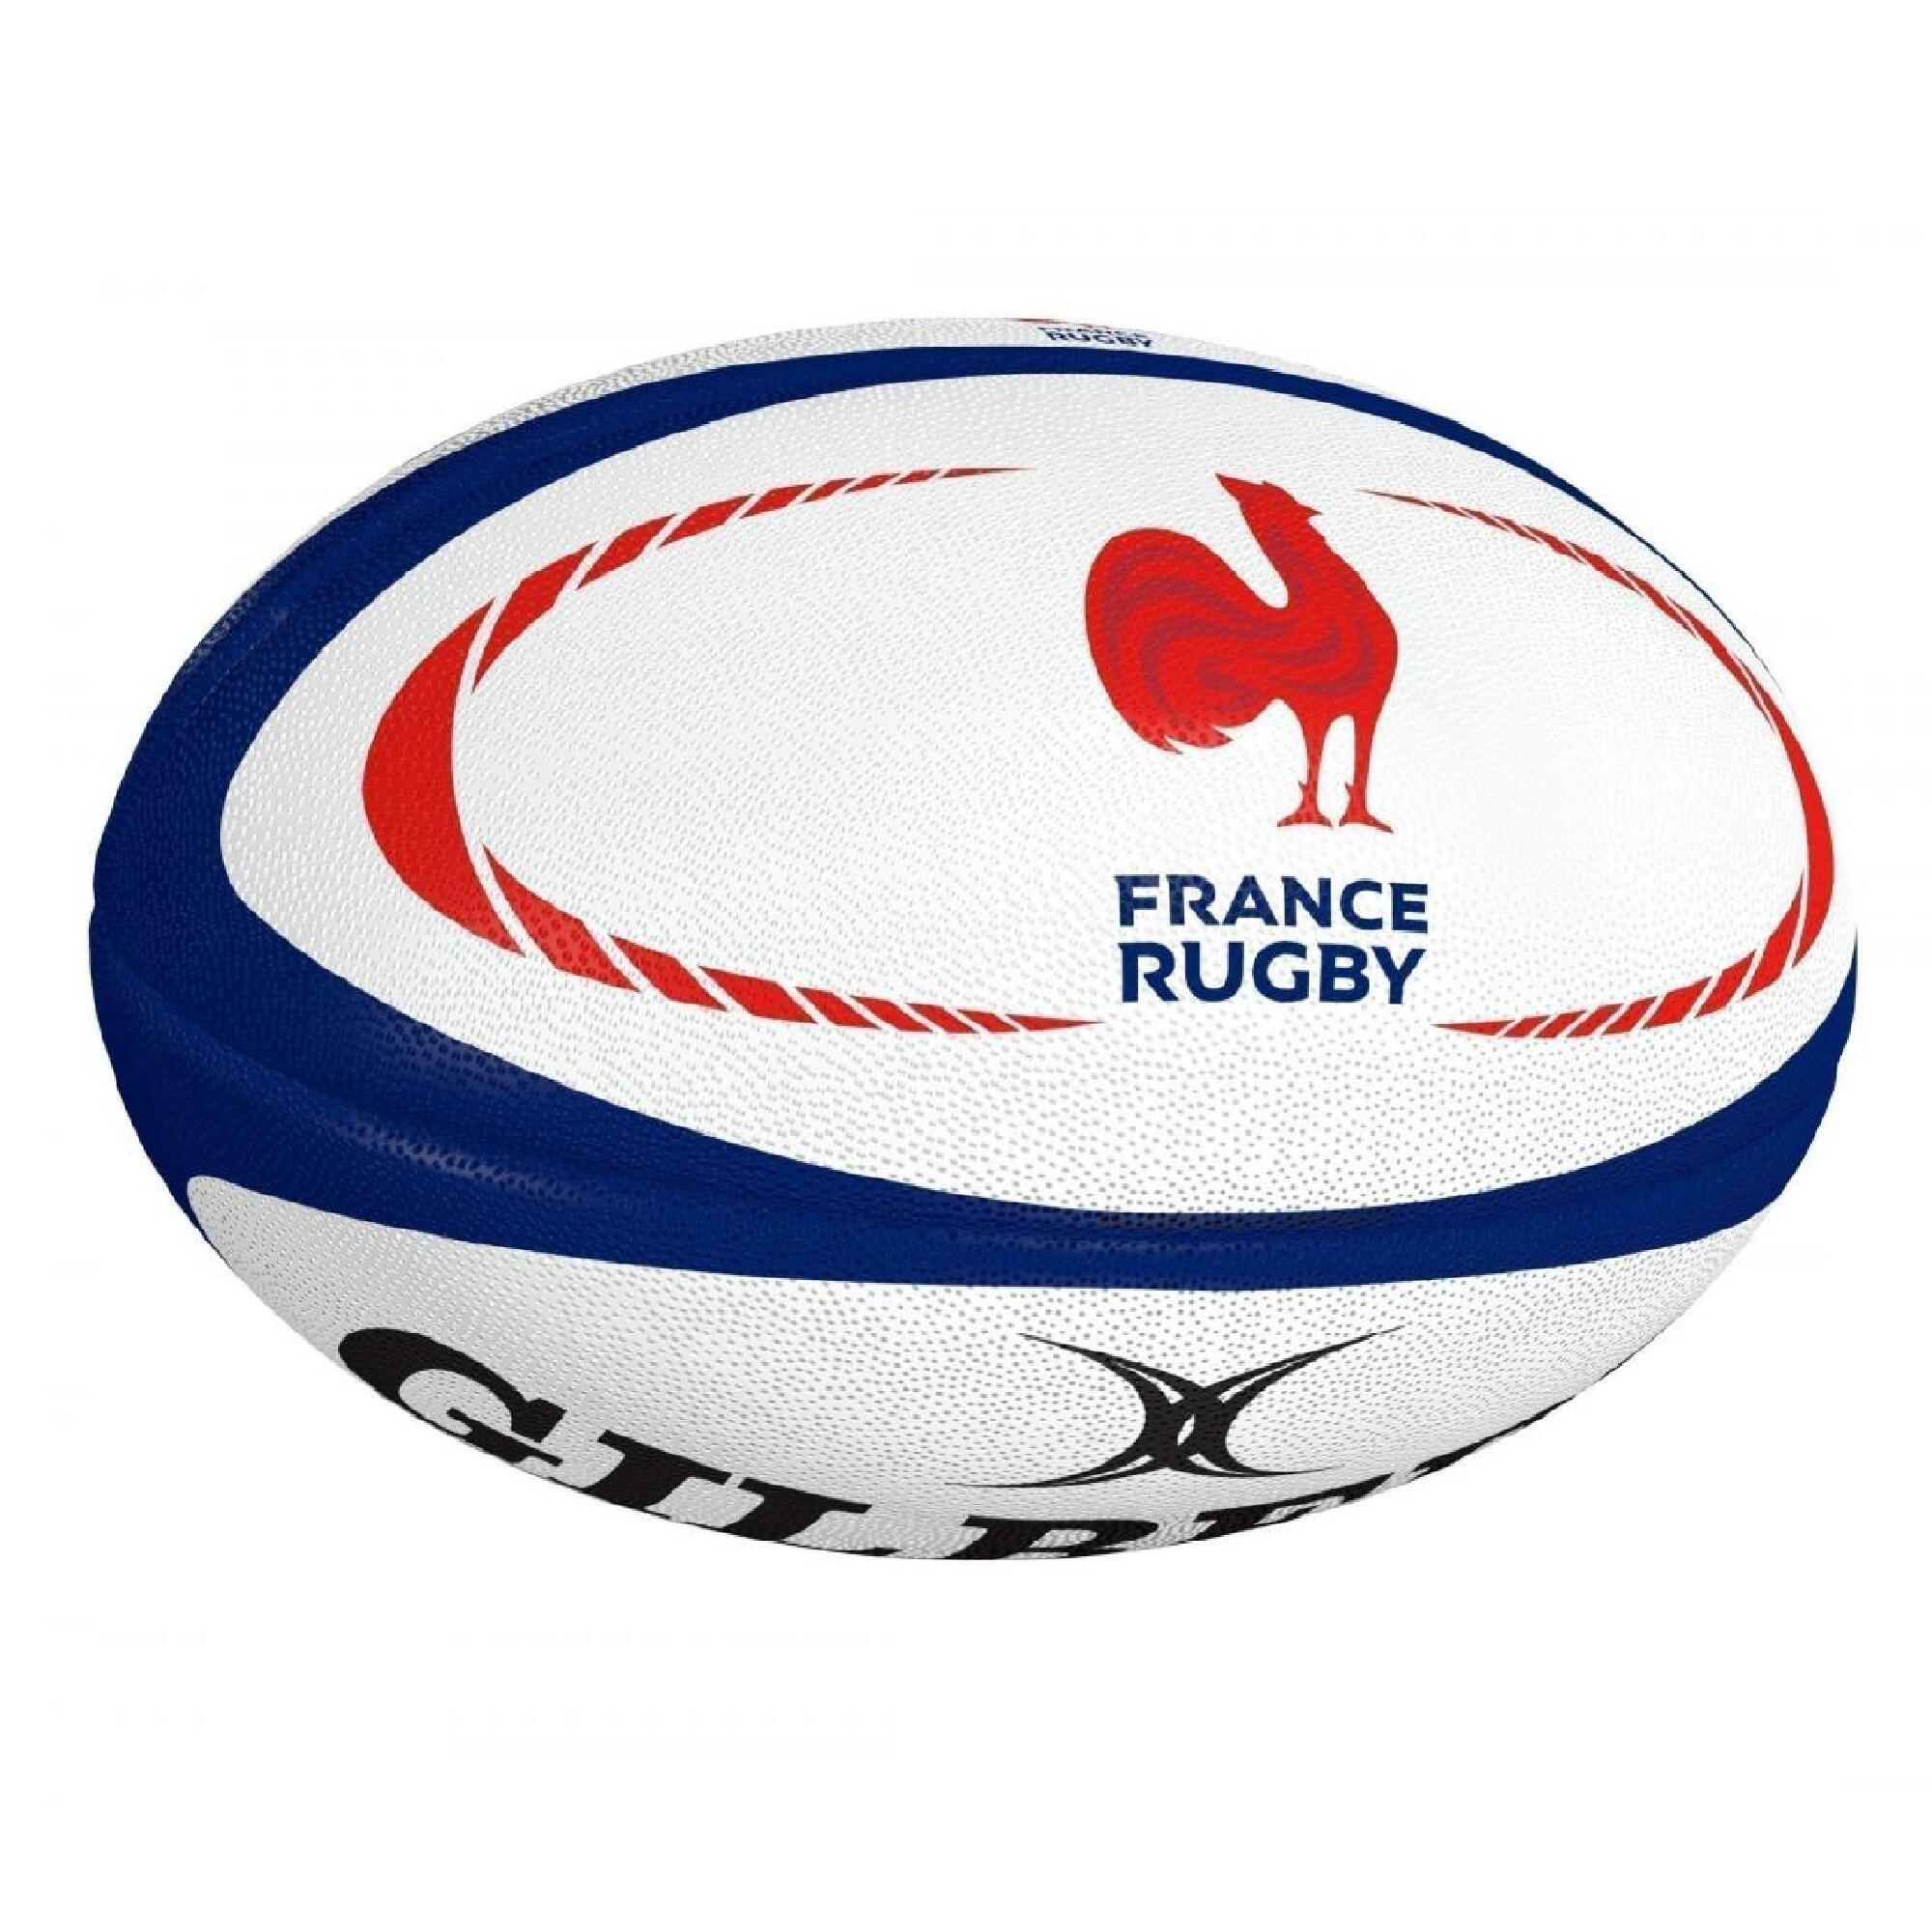 Minge Rugby Gilbert Replica France Mărimea 5 alb-albastru-roșu Accesorii  Mingi rugby si accesorii